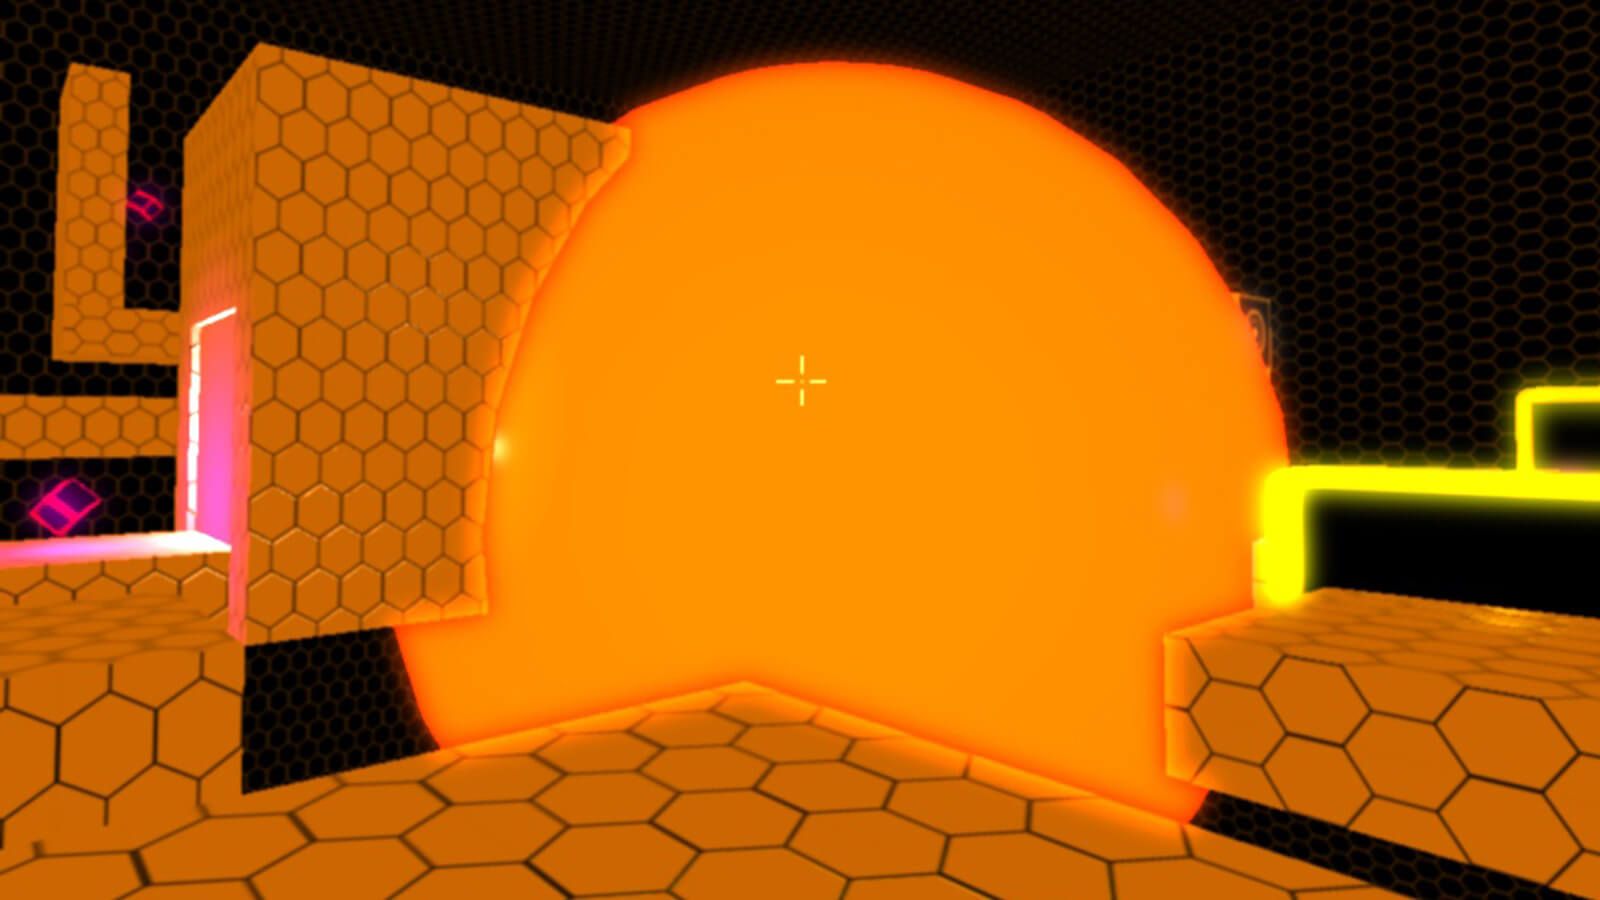 A glowing orange orb envelops metallic orange platforms.